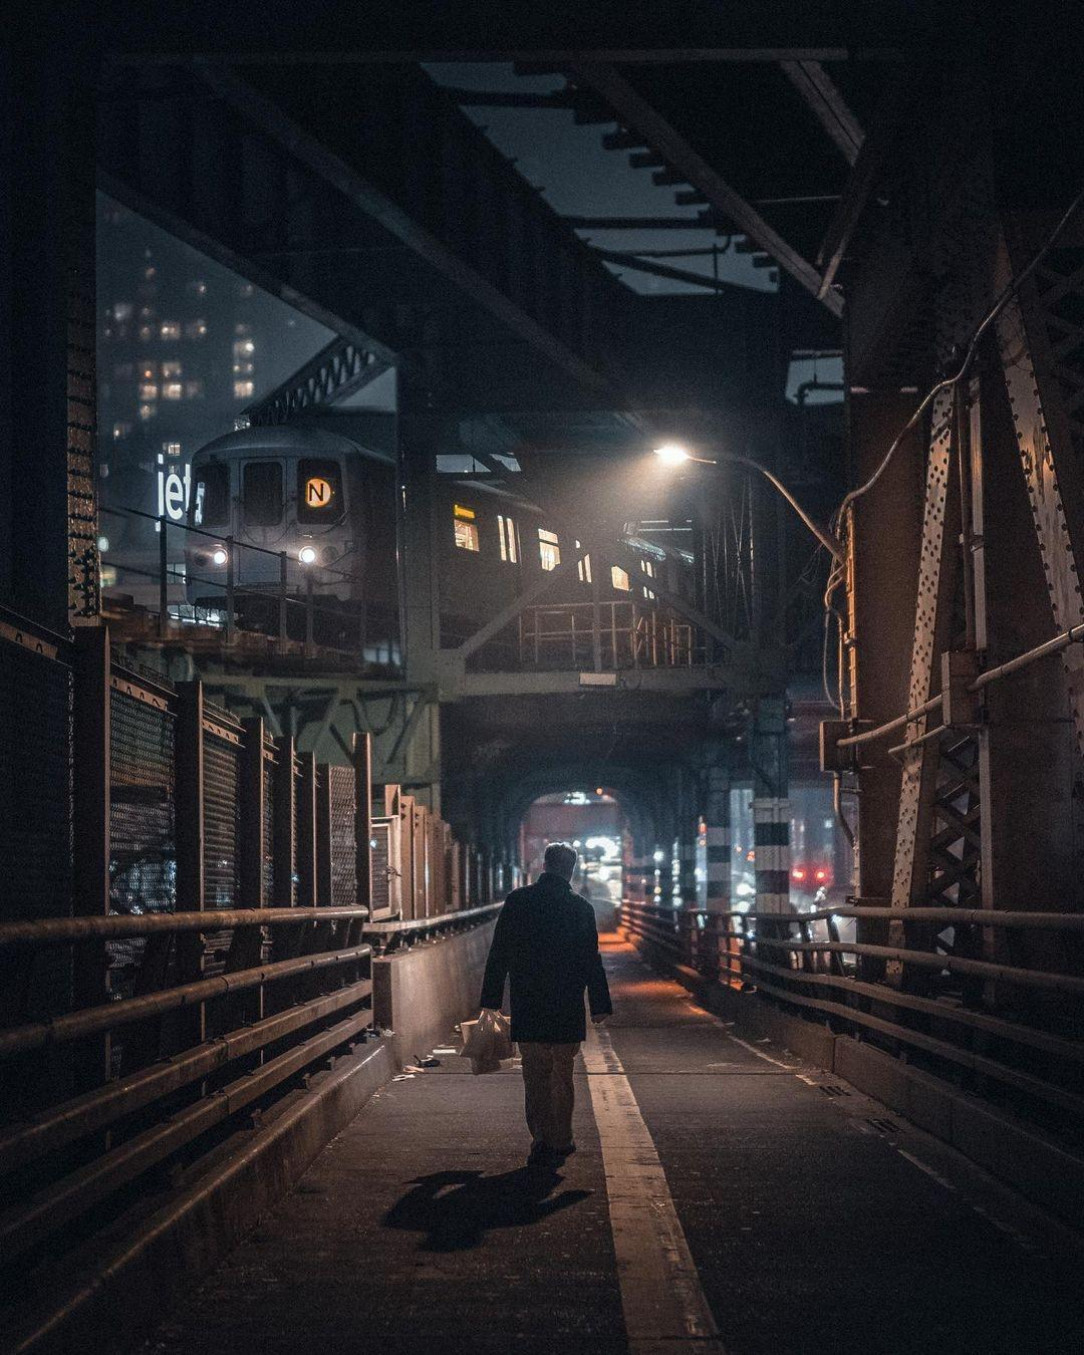 Night scene at New York